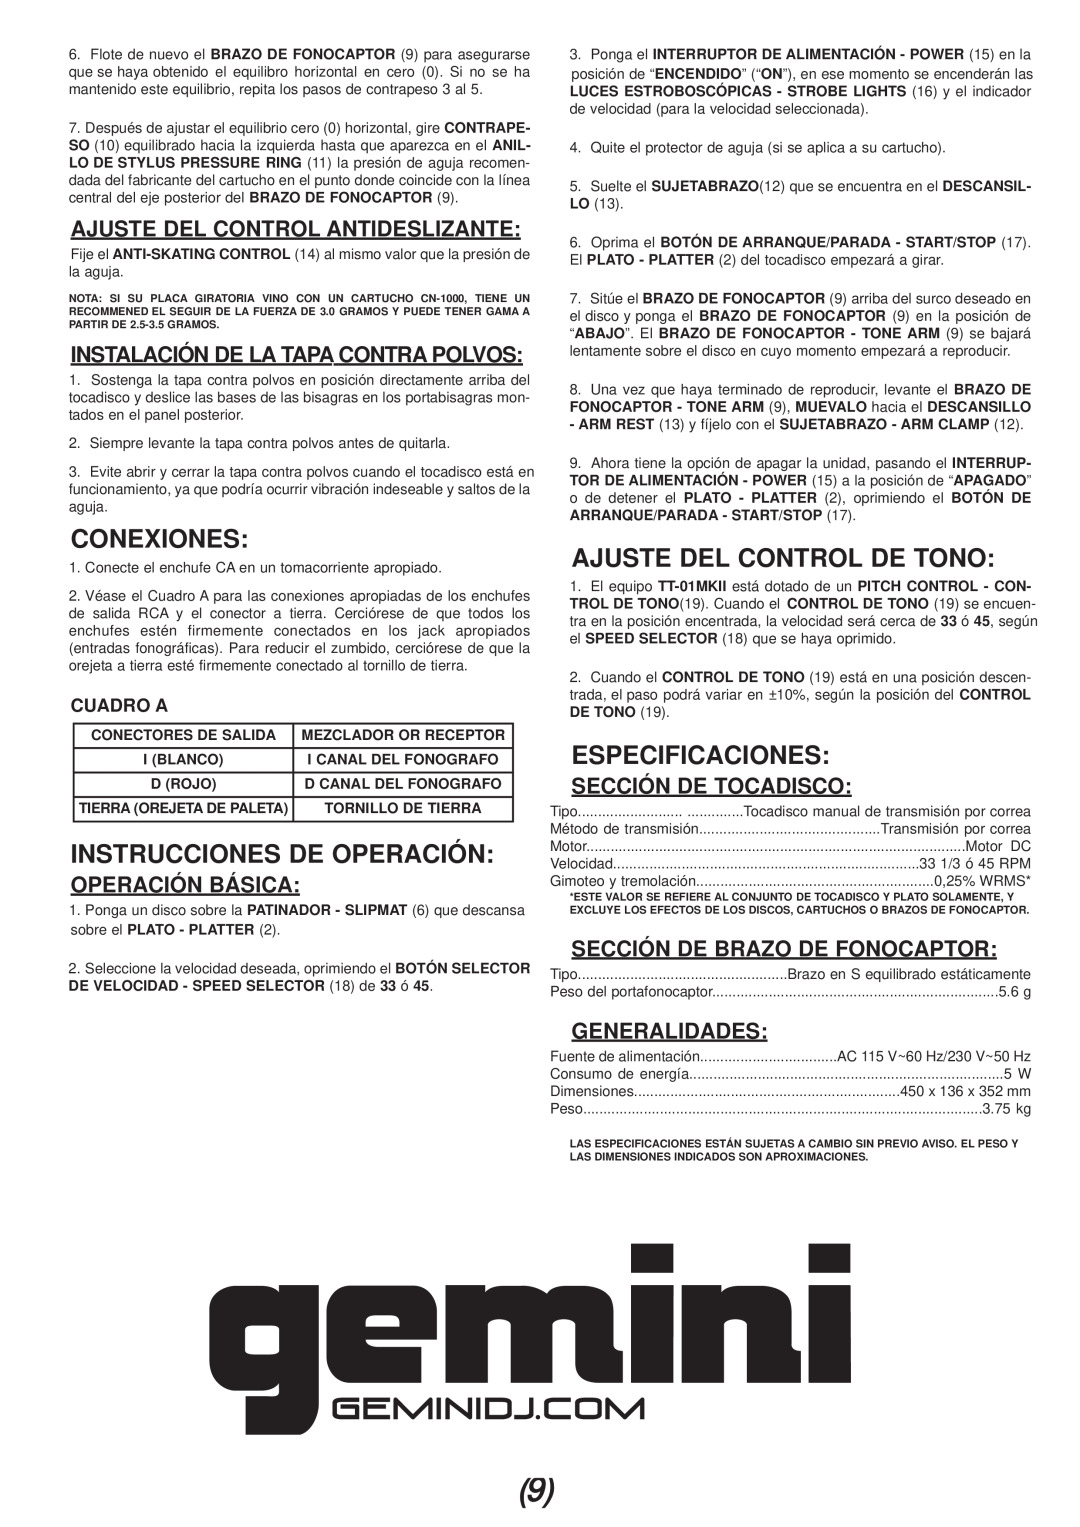 Gemini TT-01mkii Conexiones, Instrucciones De Operación, Ajuste Del Control De Tono, Especificaciones, Operación Básica 